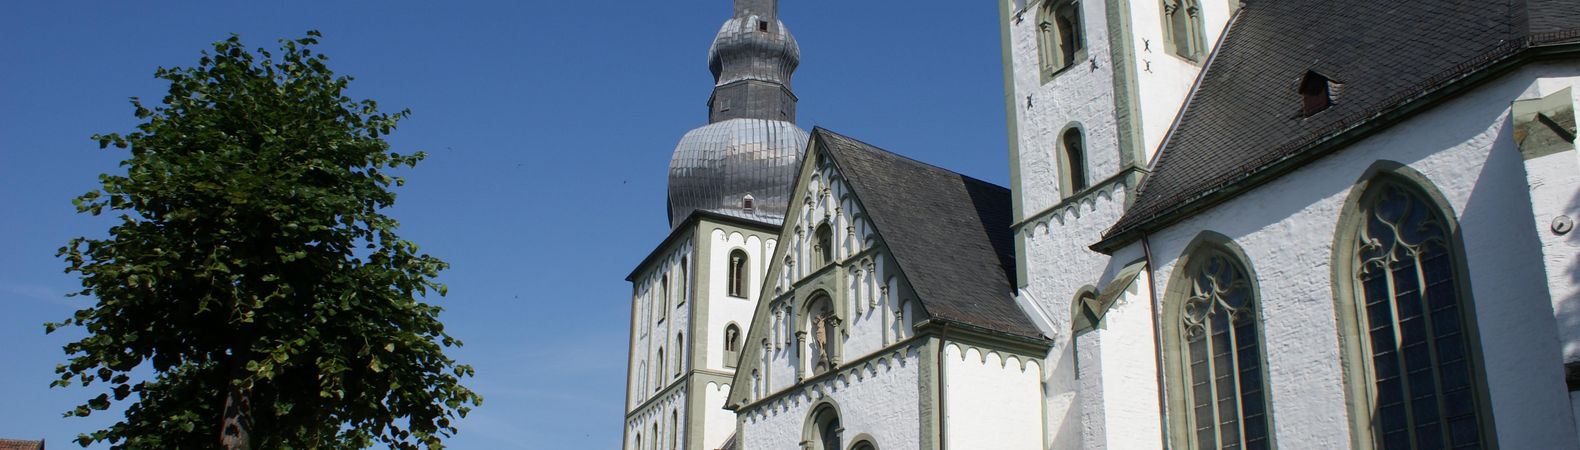 Marienkirche in Lippstadt